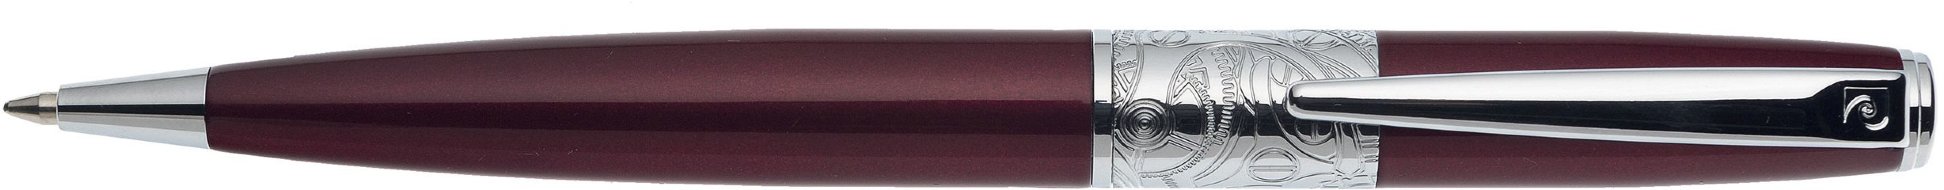 Шариковая ручка Pierre Cardin Baron бордовый лак, хром